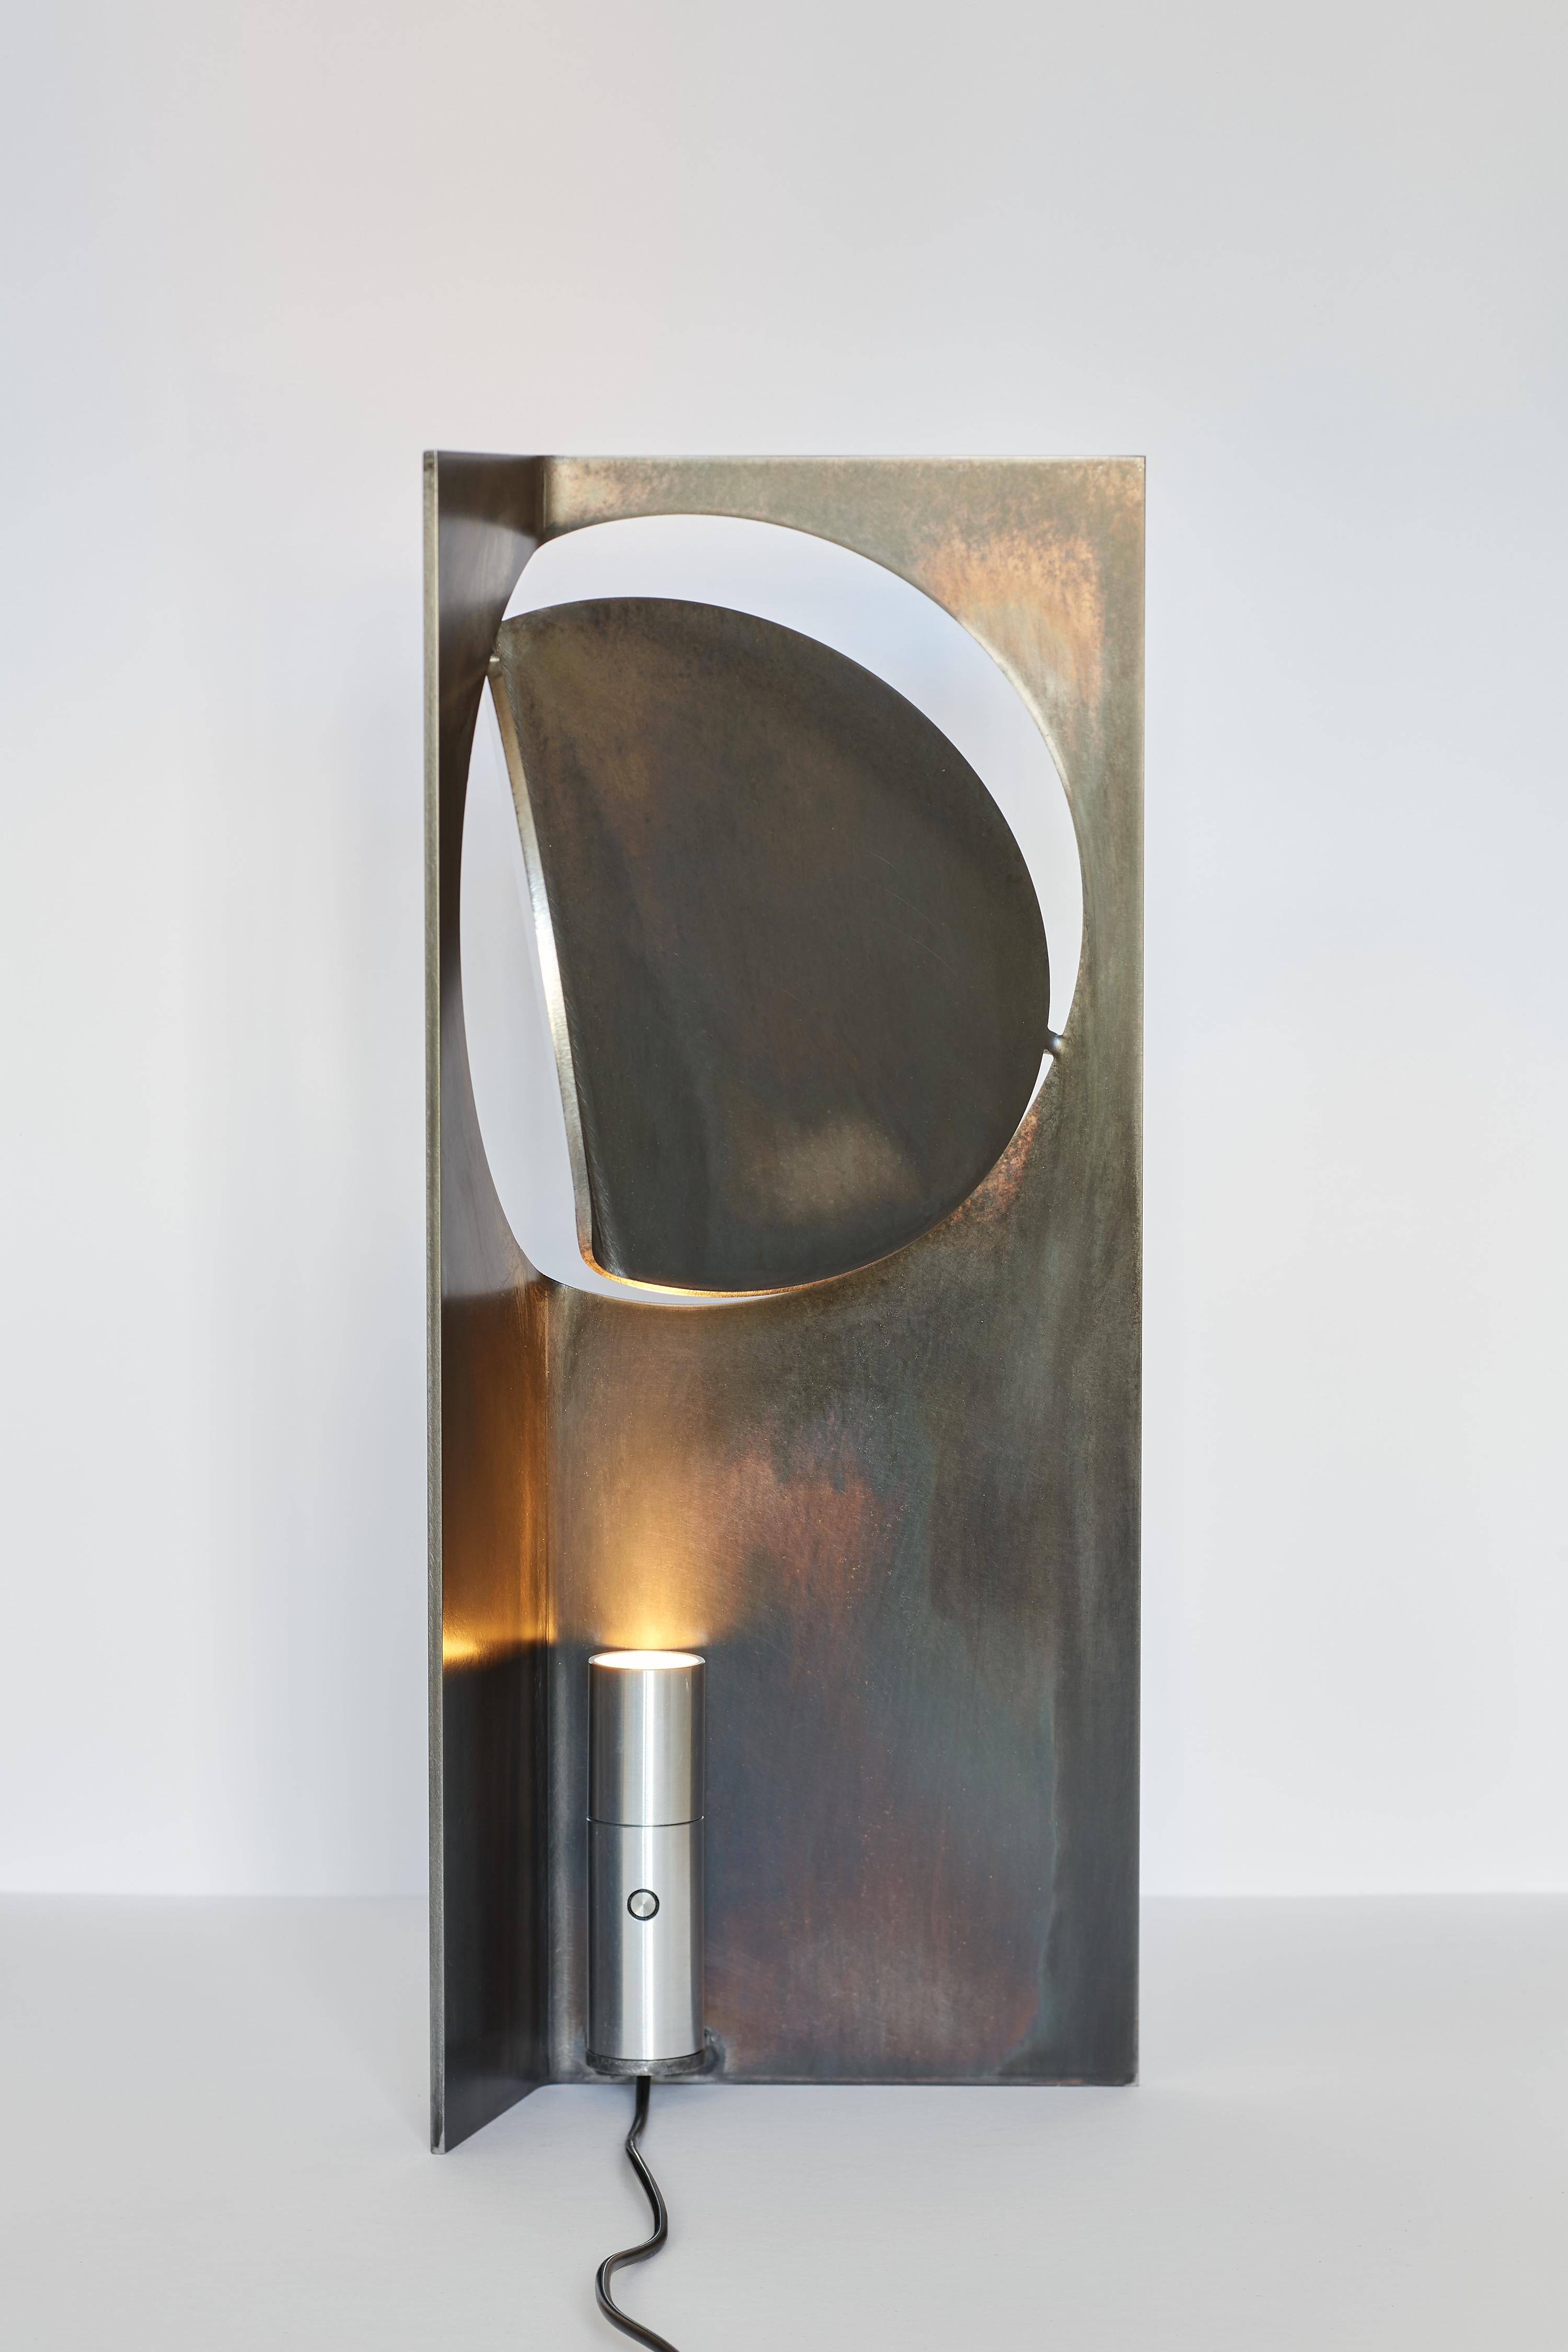 La collection ONE Table Light de Frank Franks est une série de luminaires qui allient une ingénieuse simplicité de forme à une richesse de lumière et de texture matérielle. Dotée d'un design en acier inoxydable brossé à la main, cette lampe de table